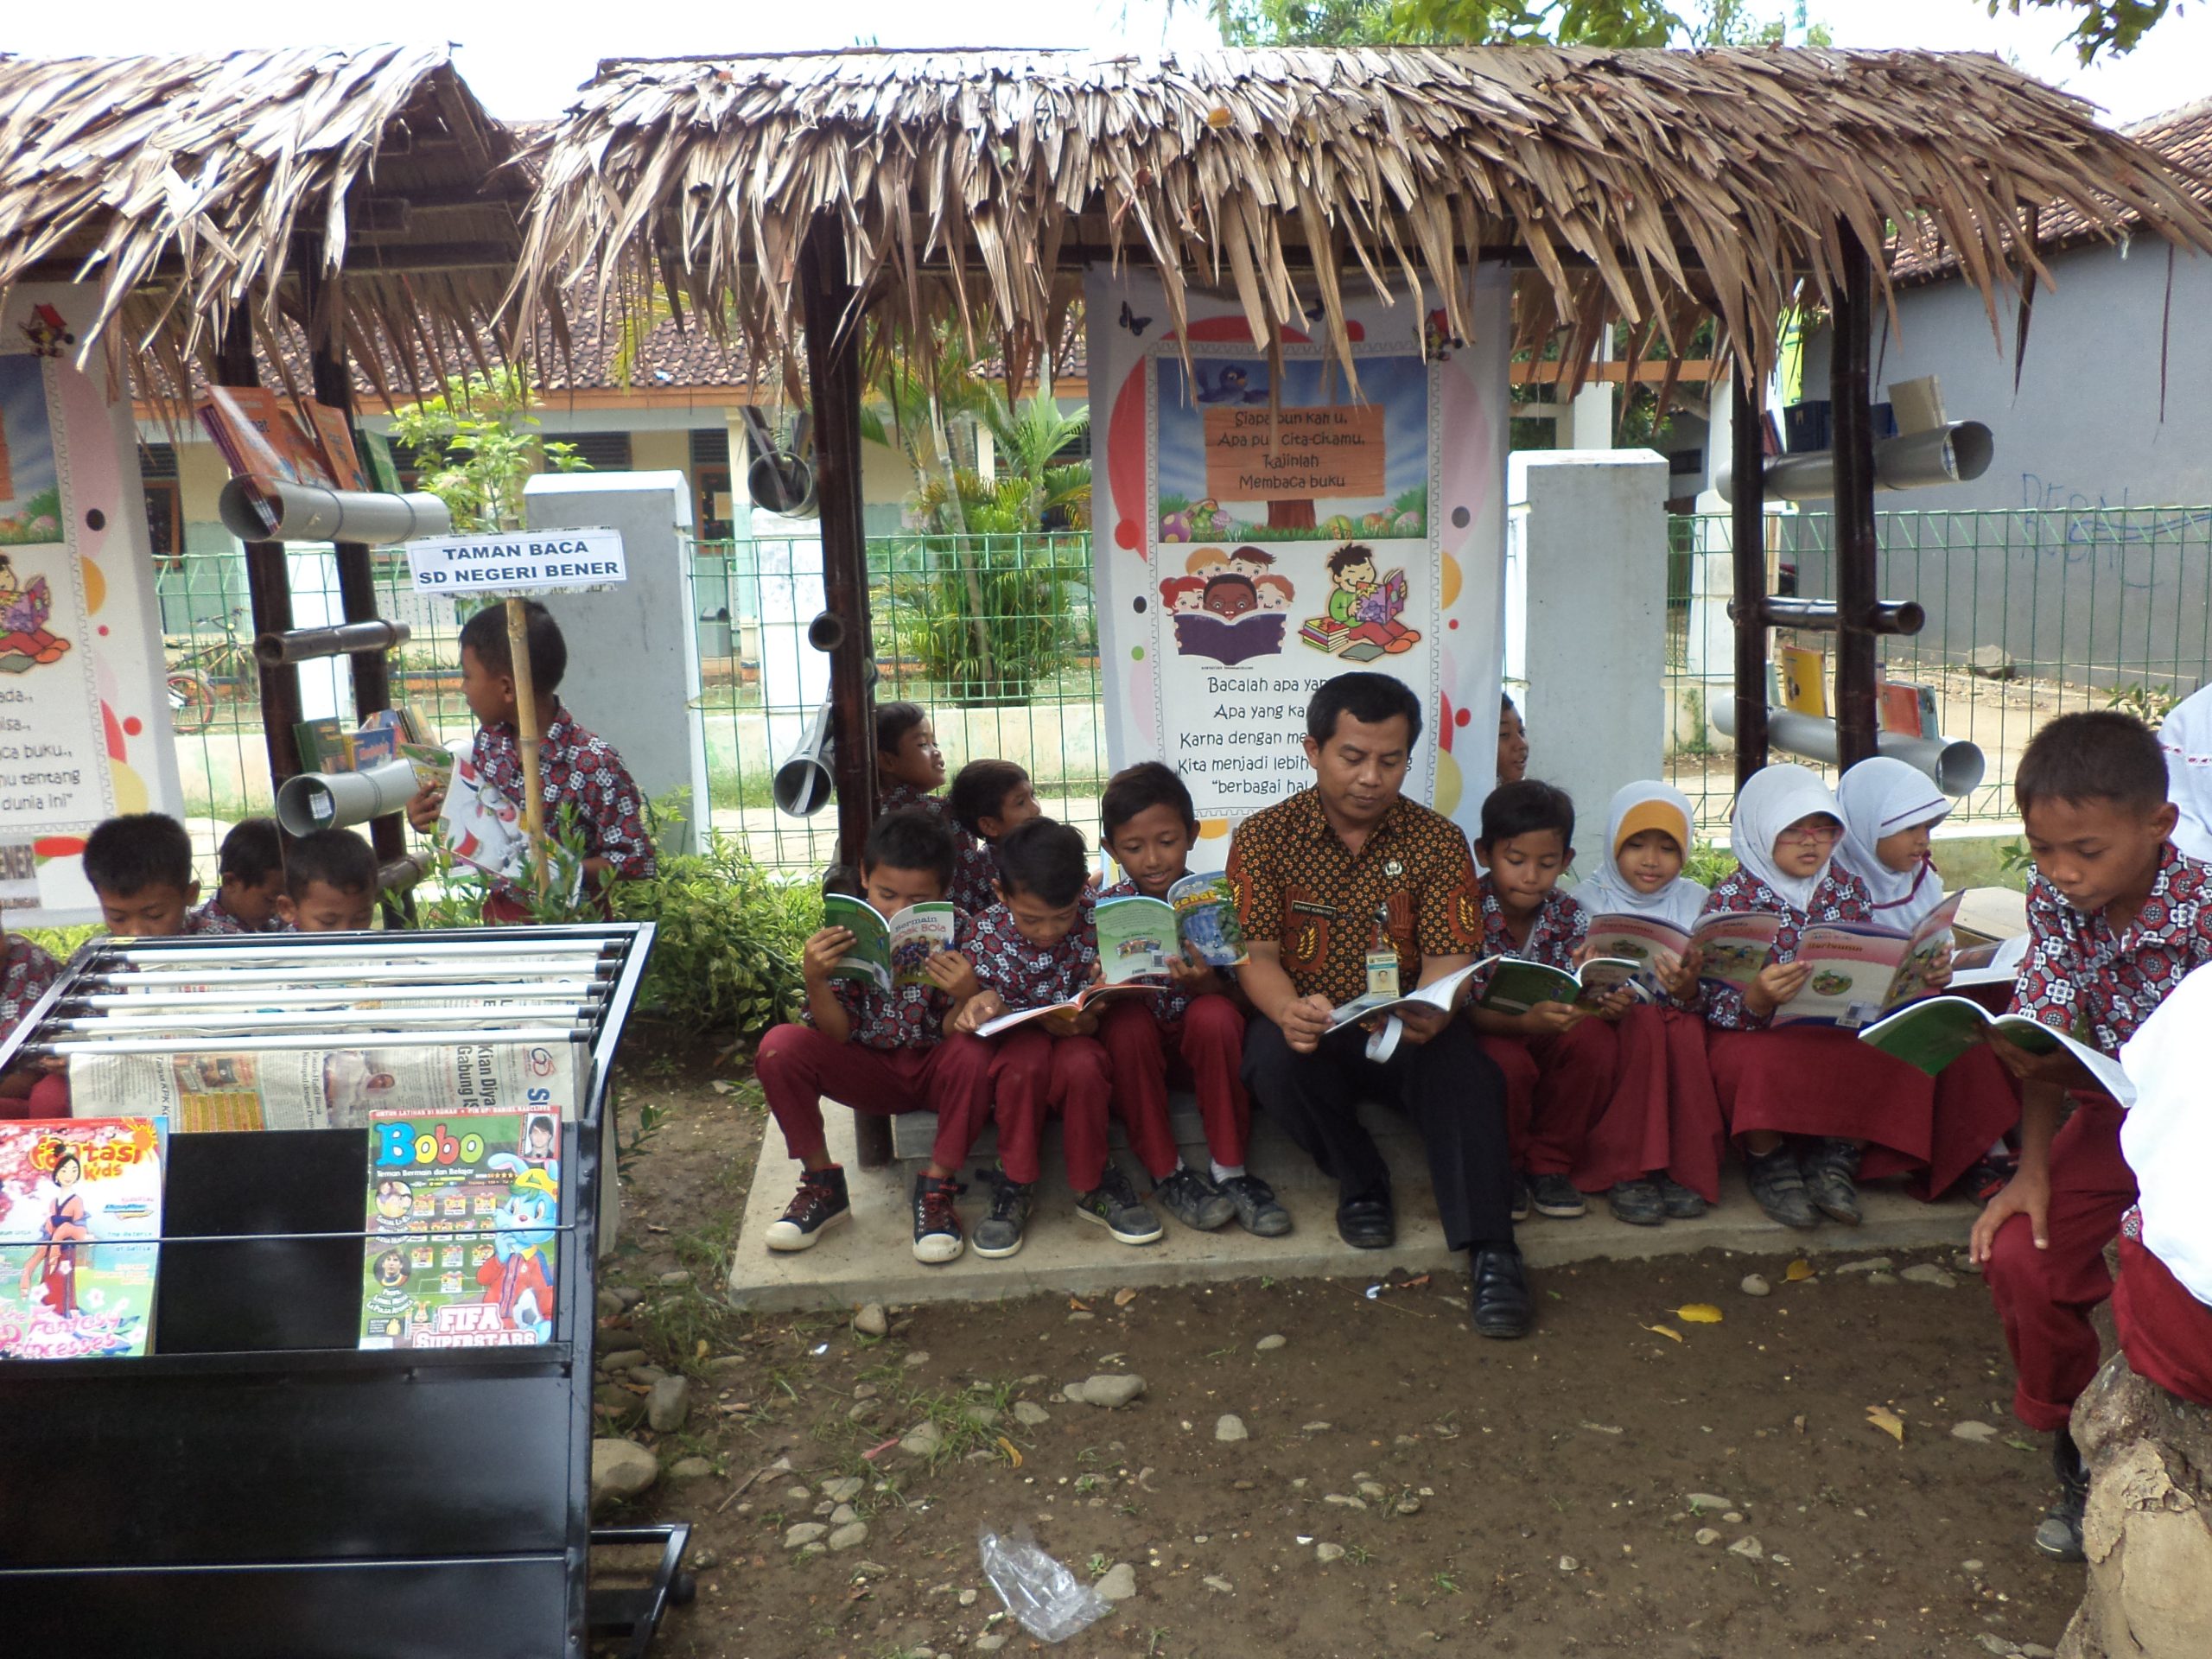 Rohmad Kurniadi mendampingi kegiatan membaca buku yang dilaksanakan oleh SD Negeri Bener setiap Hari Sabtu.